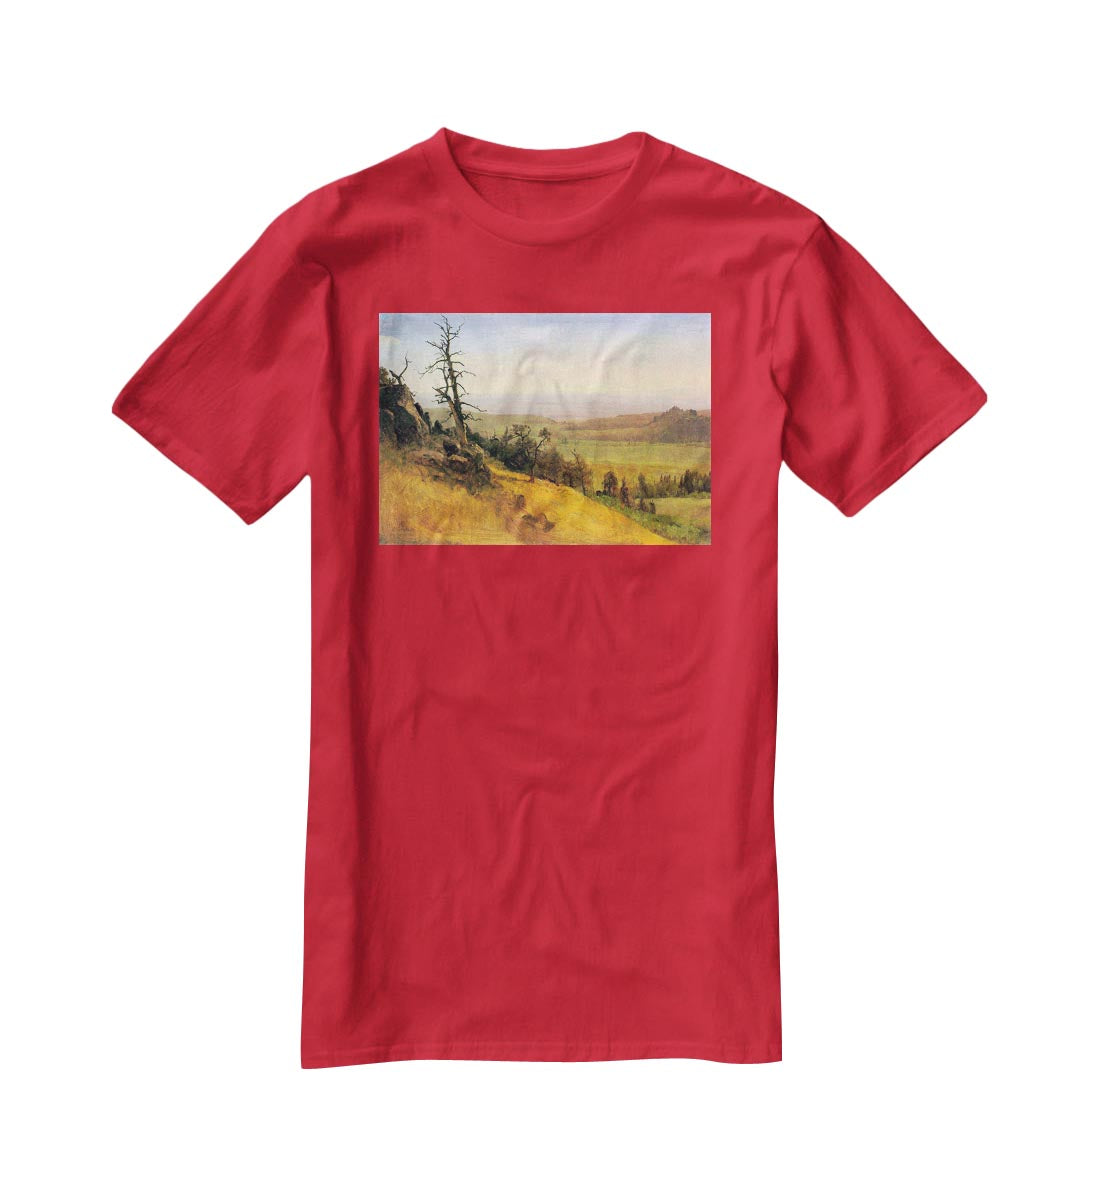 Wasatch Mountains Nebraska by Bierstadt T-Shirt - Canvas Art Rocks - 4